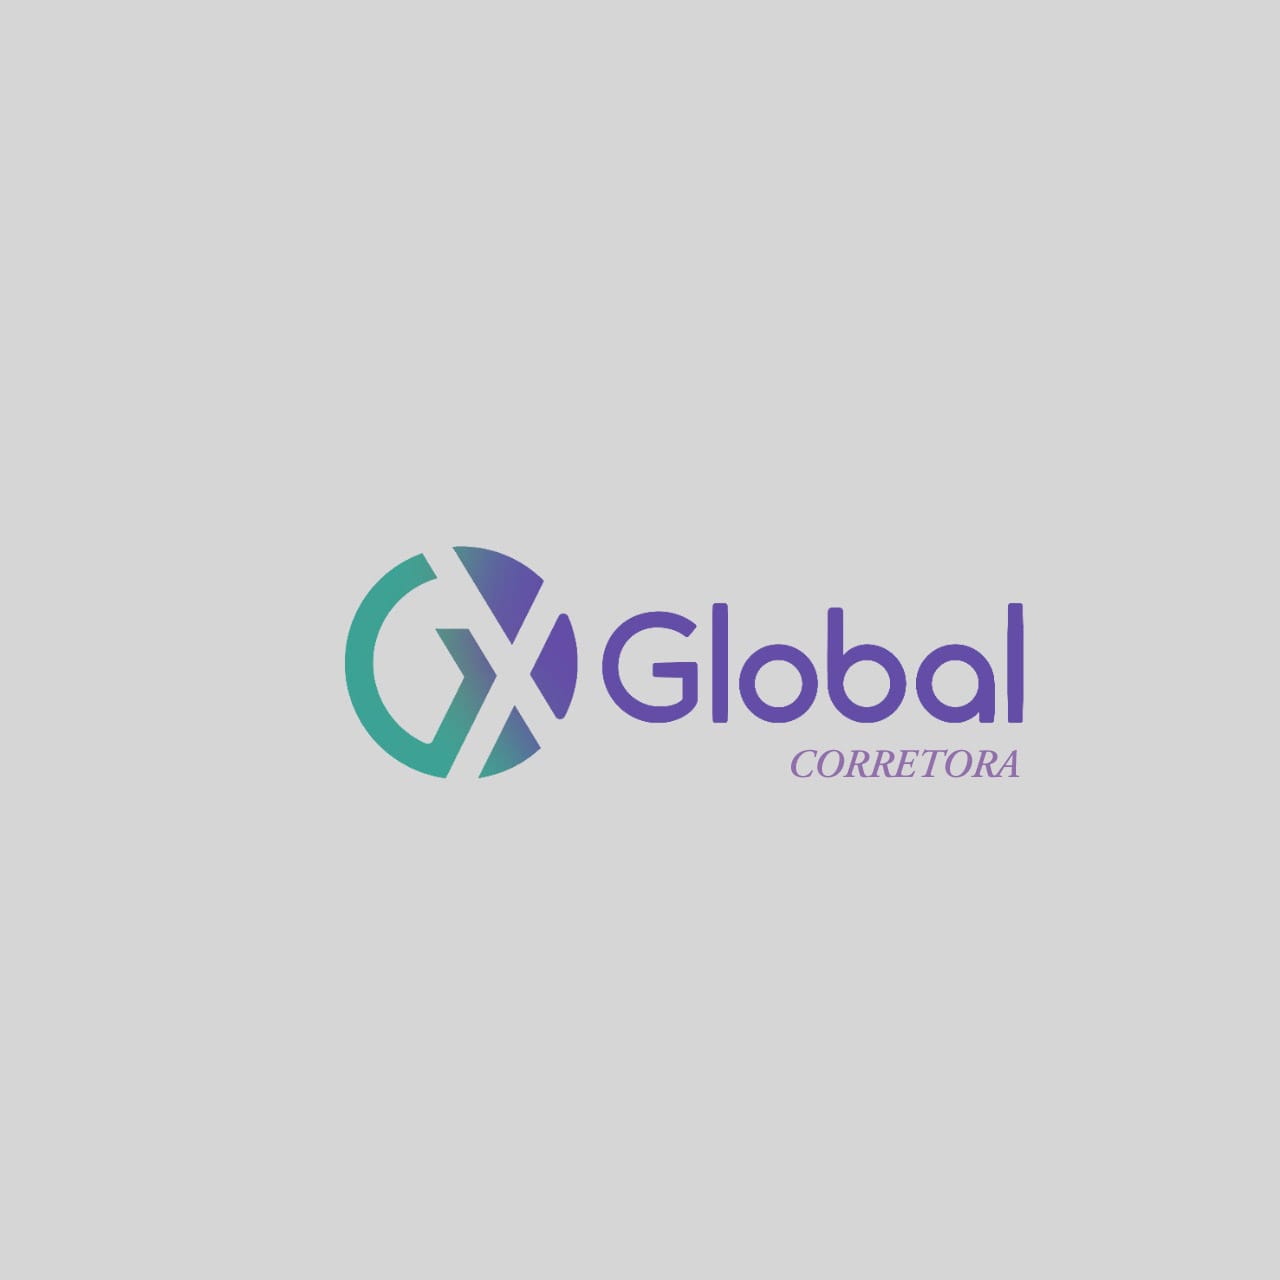 Corretora GX GLOBAL